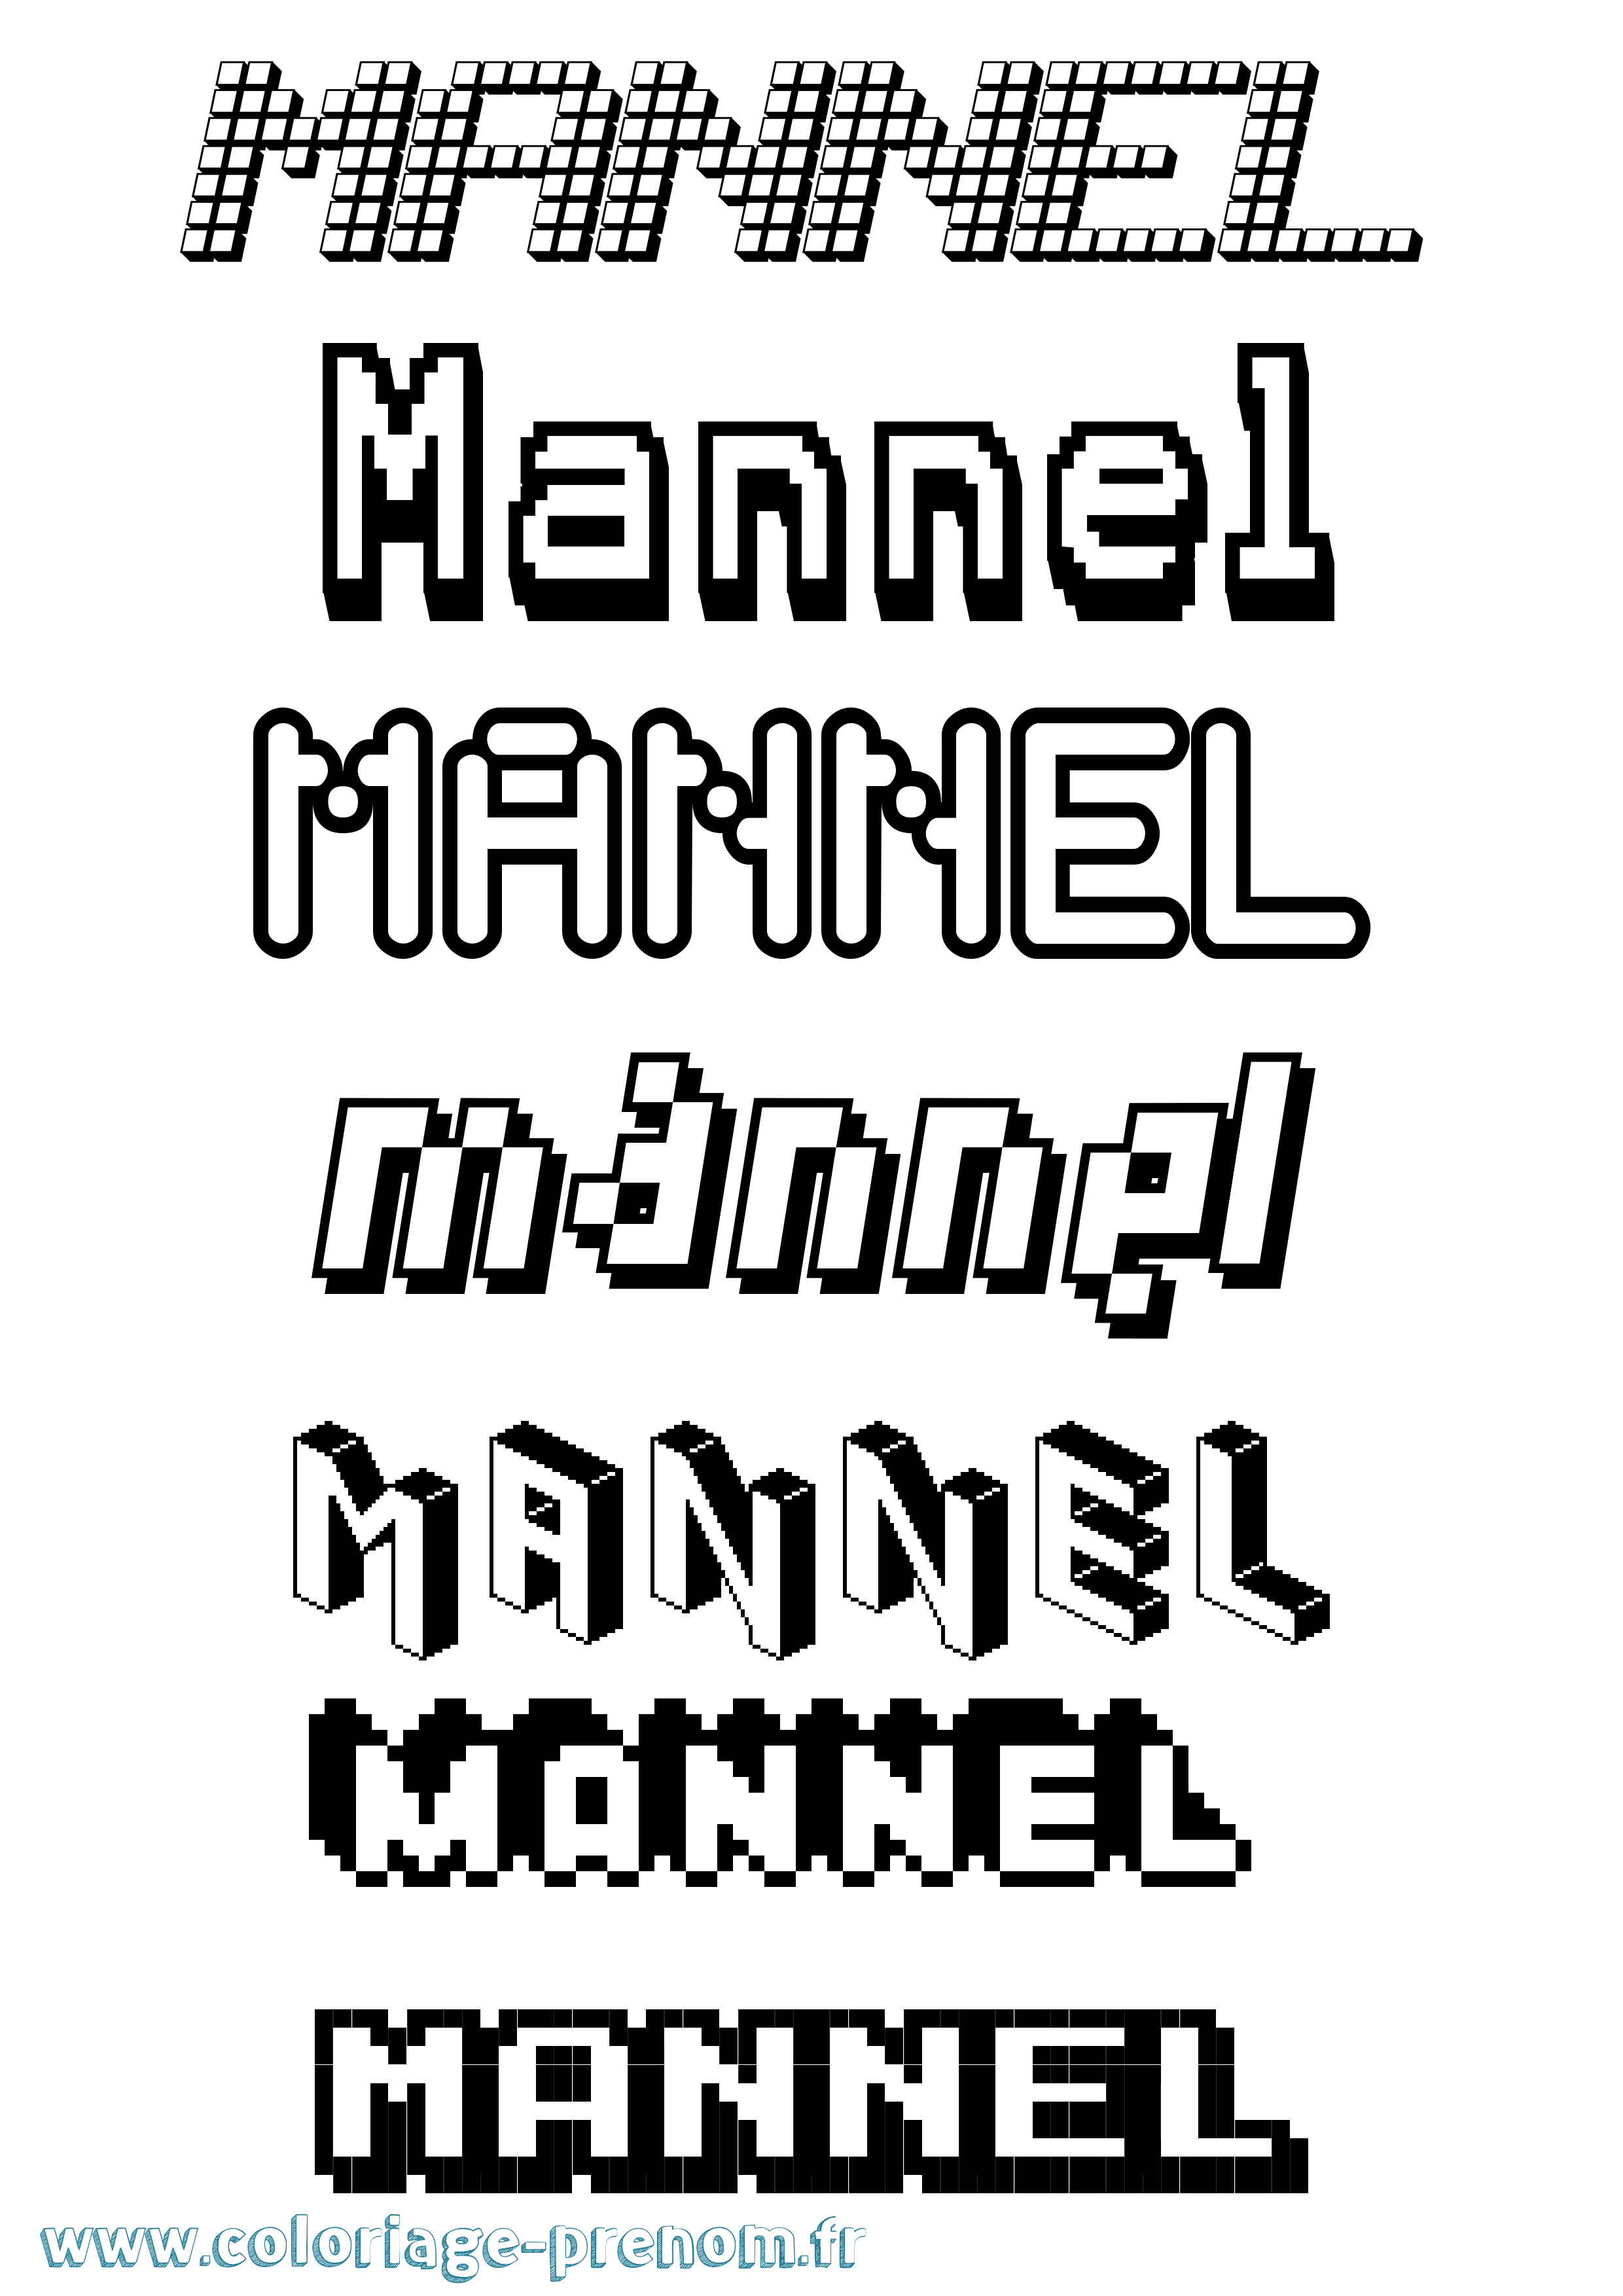 Coloriage prénom Mannel Pixel